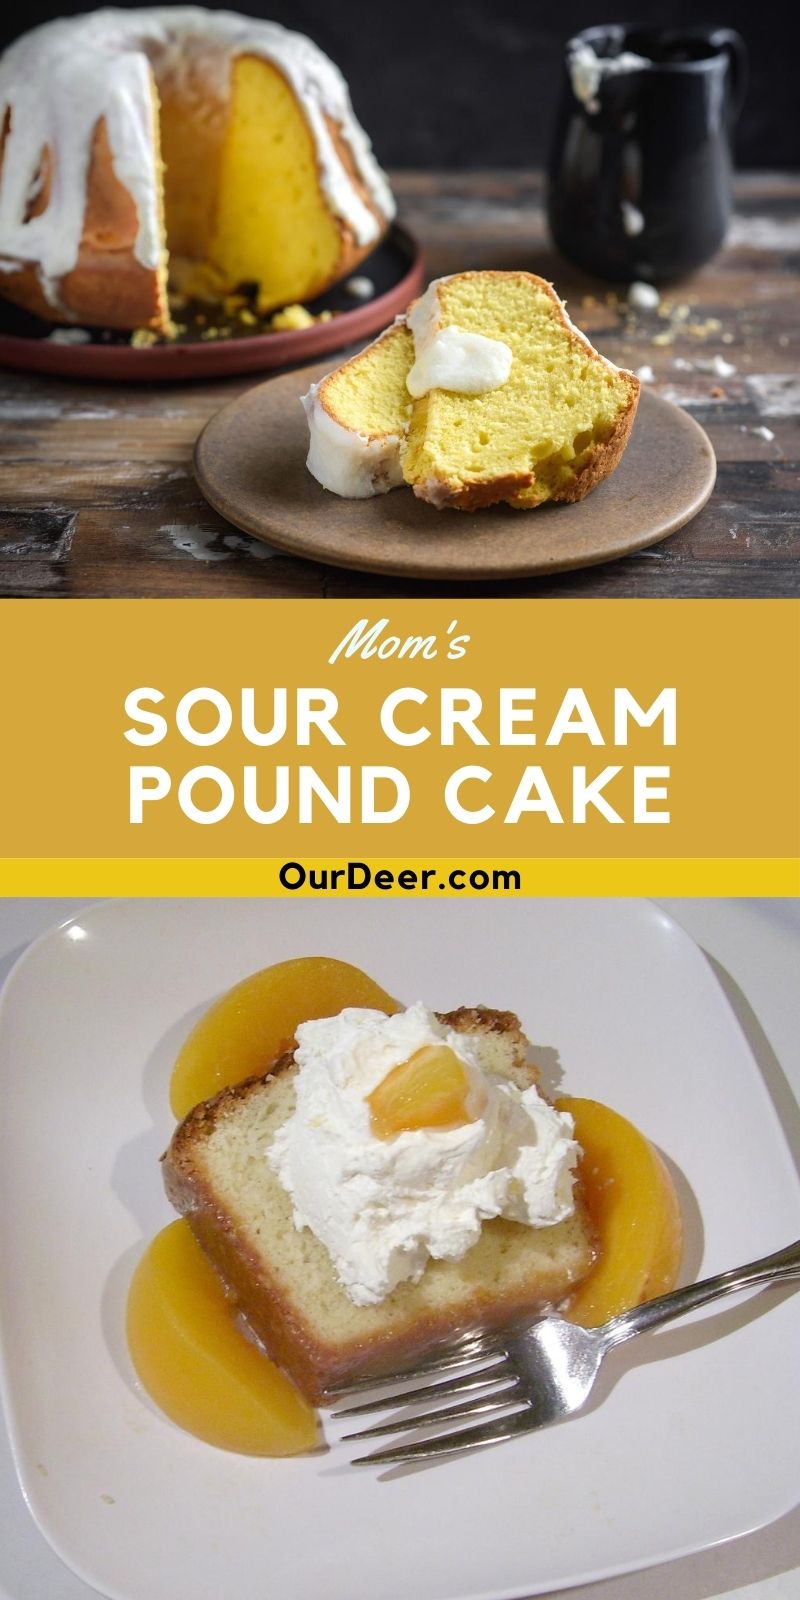 Mom’s Sour Cream Pound Cake